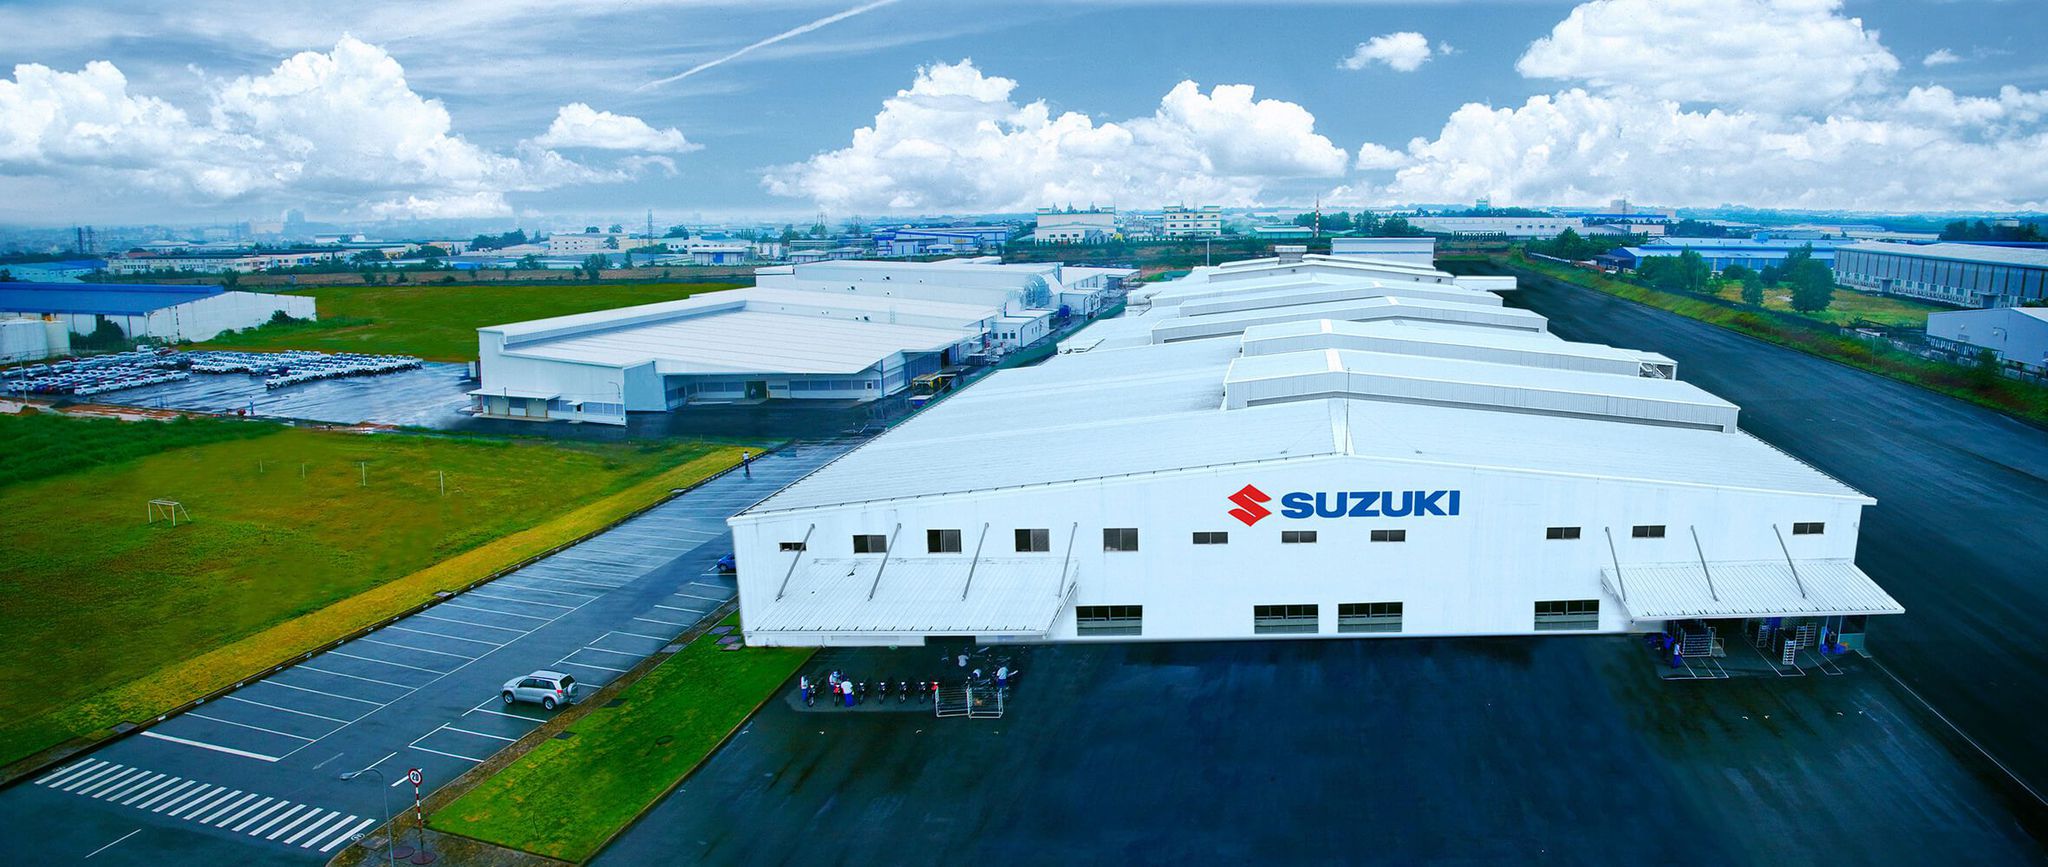  Nhà máy của Suzuki Việt Nam được đặt tại Khu công nghiệp Biên Hòa, Đồng Nai